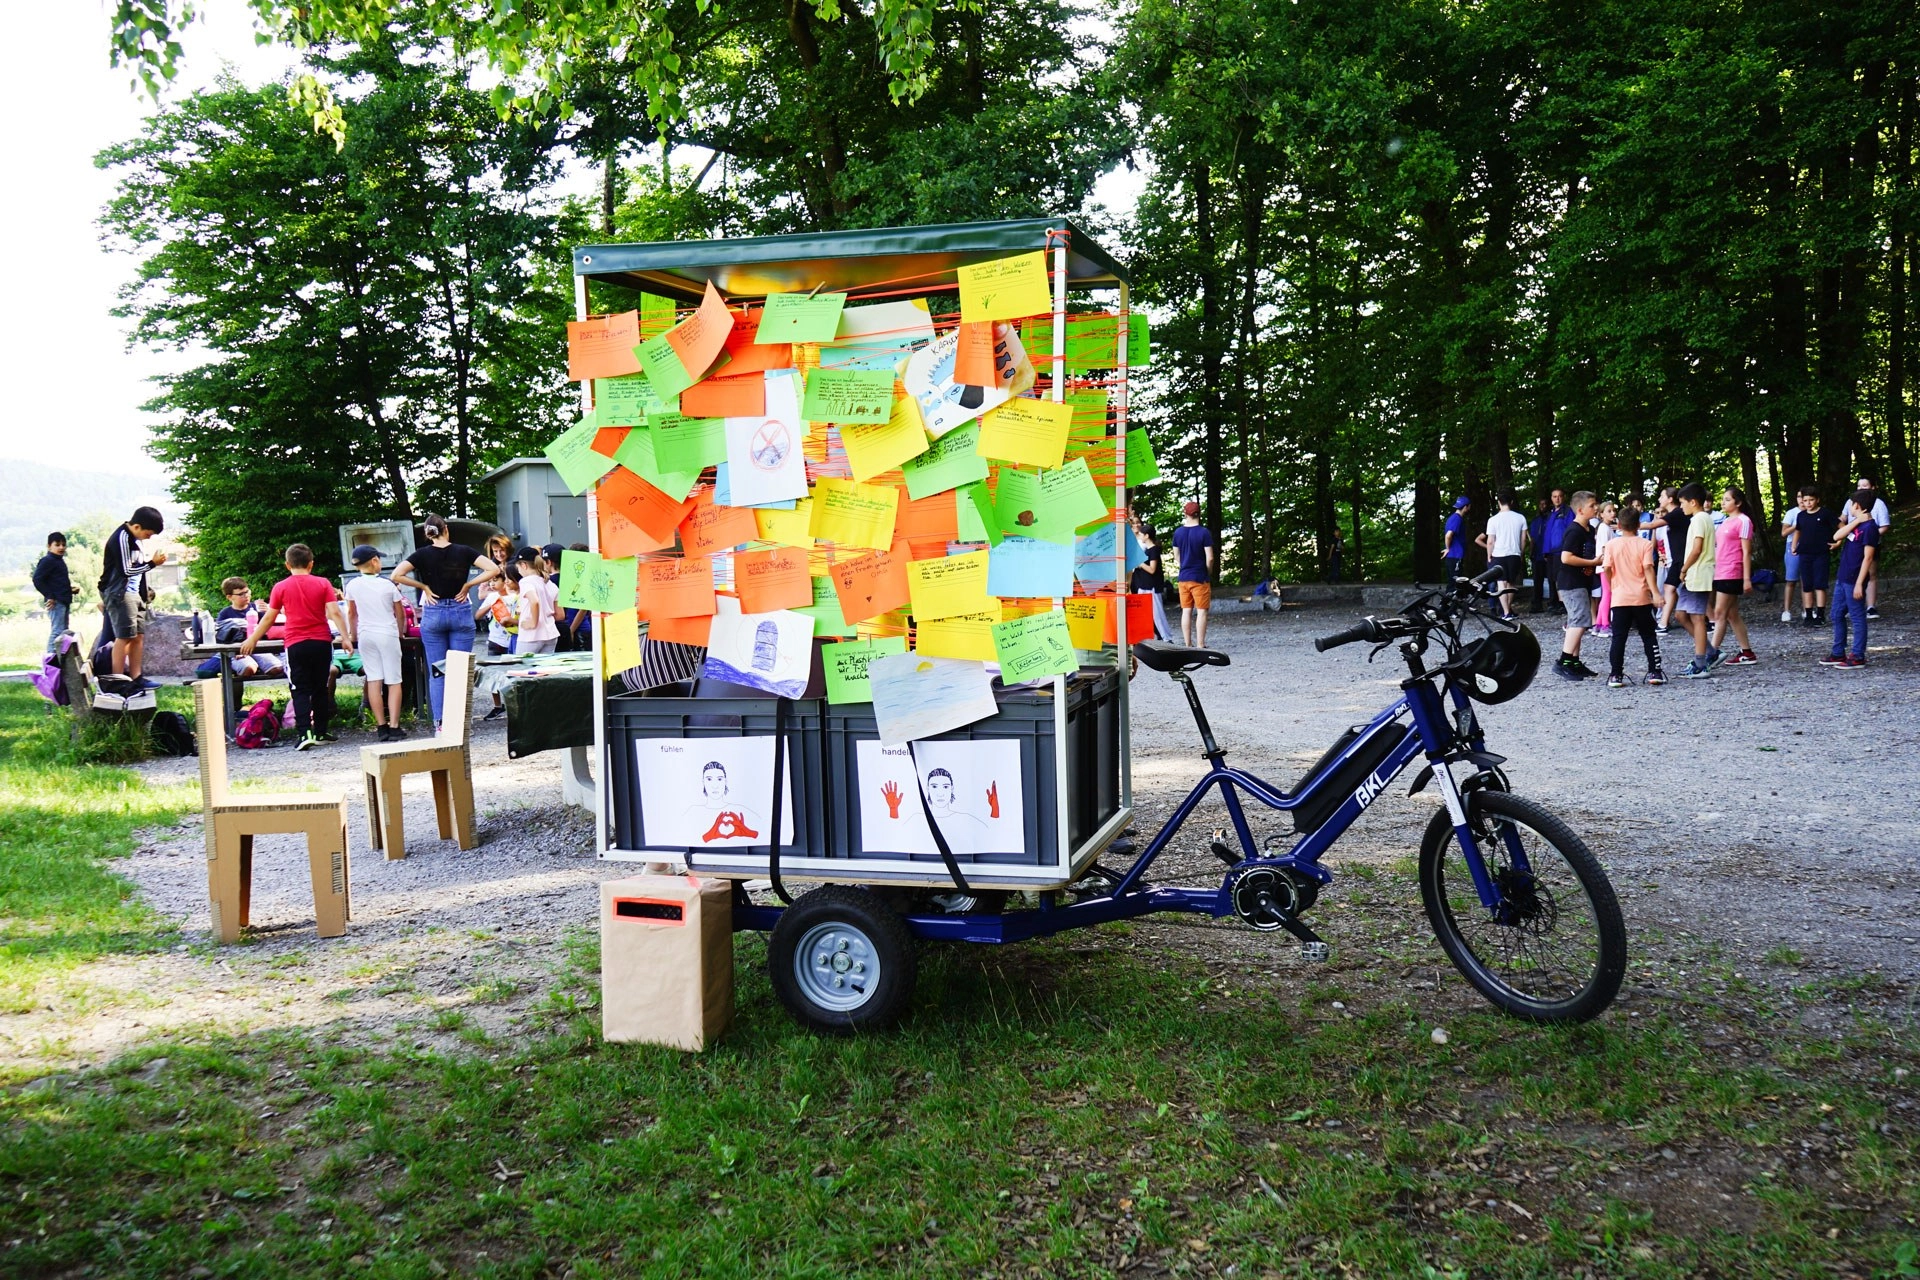 Das Zweirad Celsisu im Wald an einem Anlass mit über 100 Schüler:innen, die über eine Woche am Fahrrad ihre Gedanken deponiert haben.